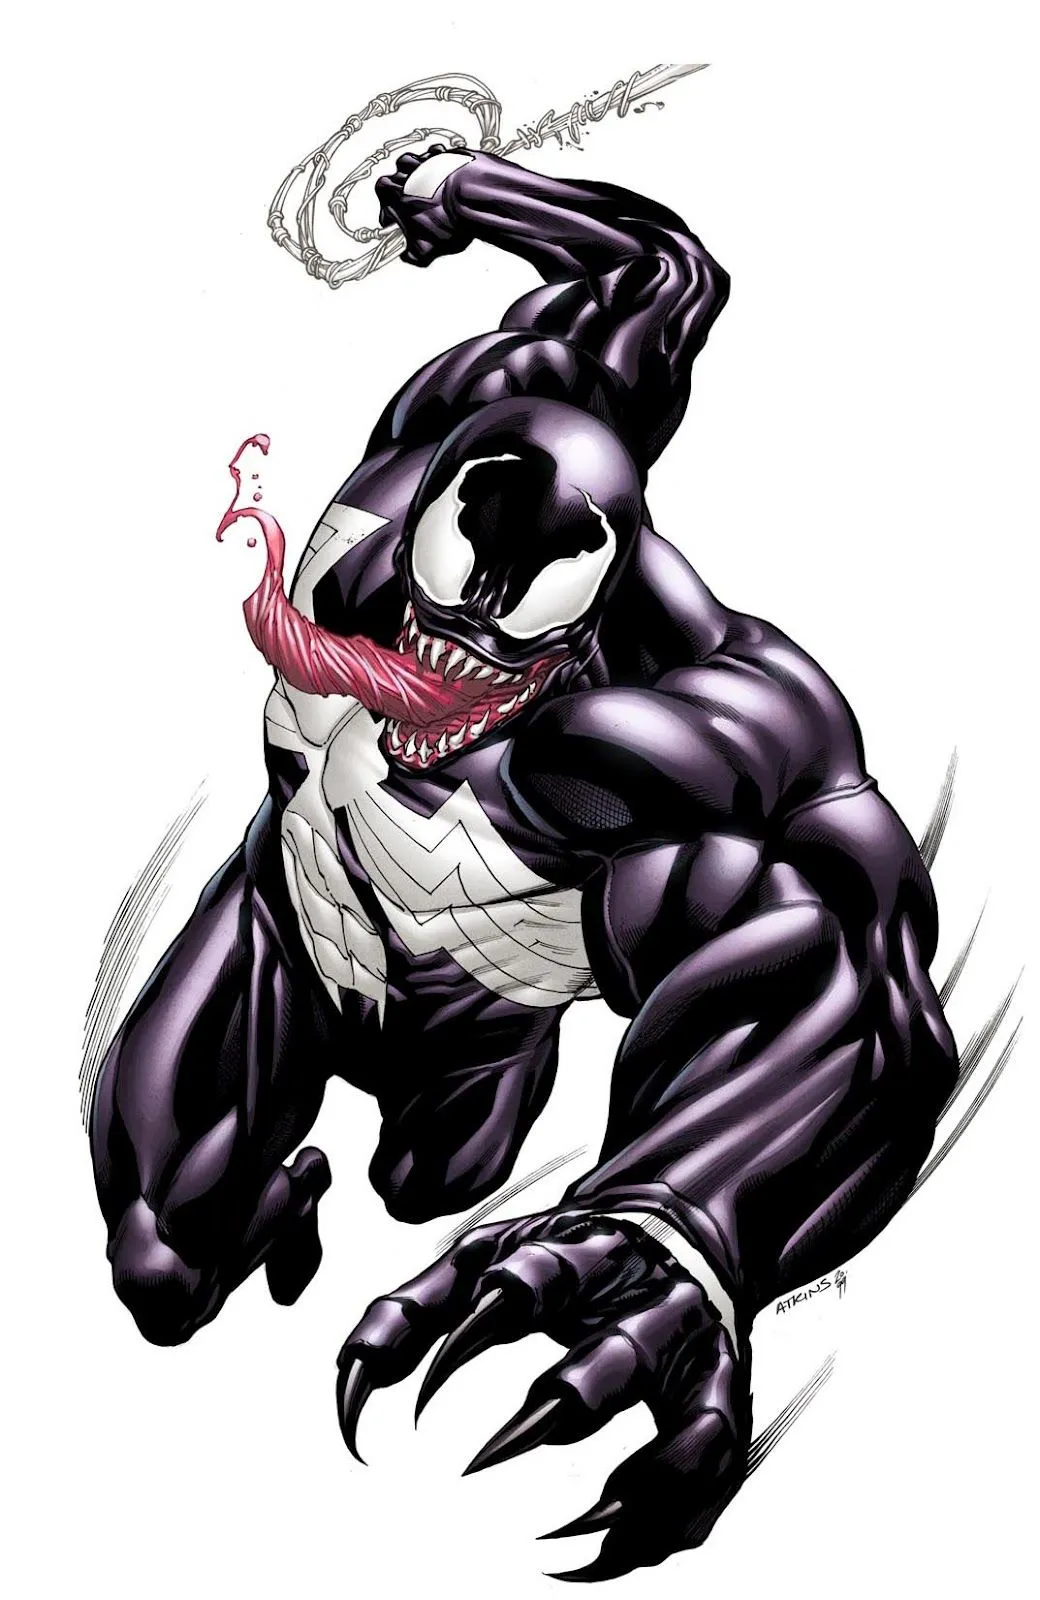 Robert Atkins Art: Venom colors...